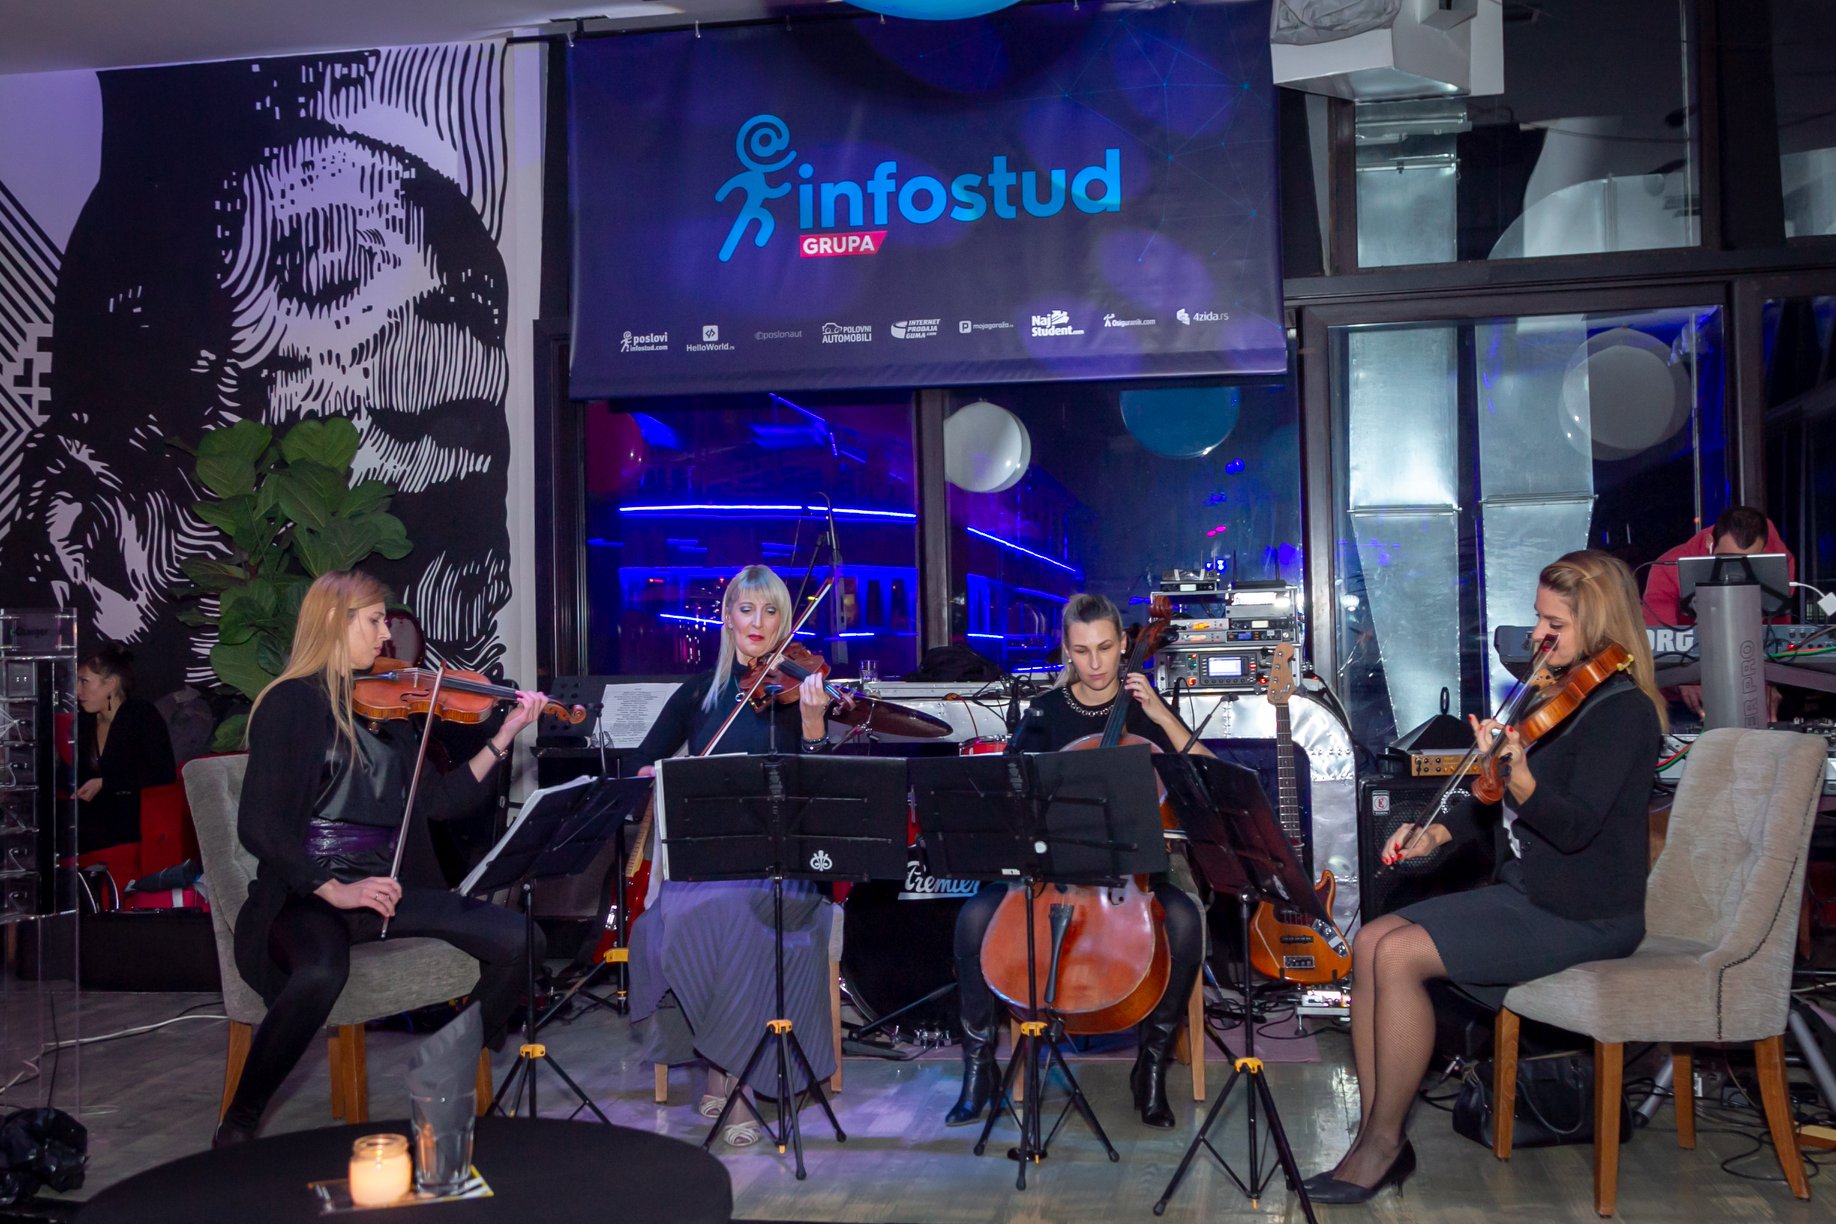 jubilej 18 godina firme kompanije wonder strings kvartet infostud subotica